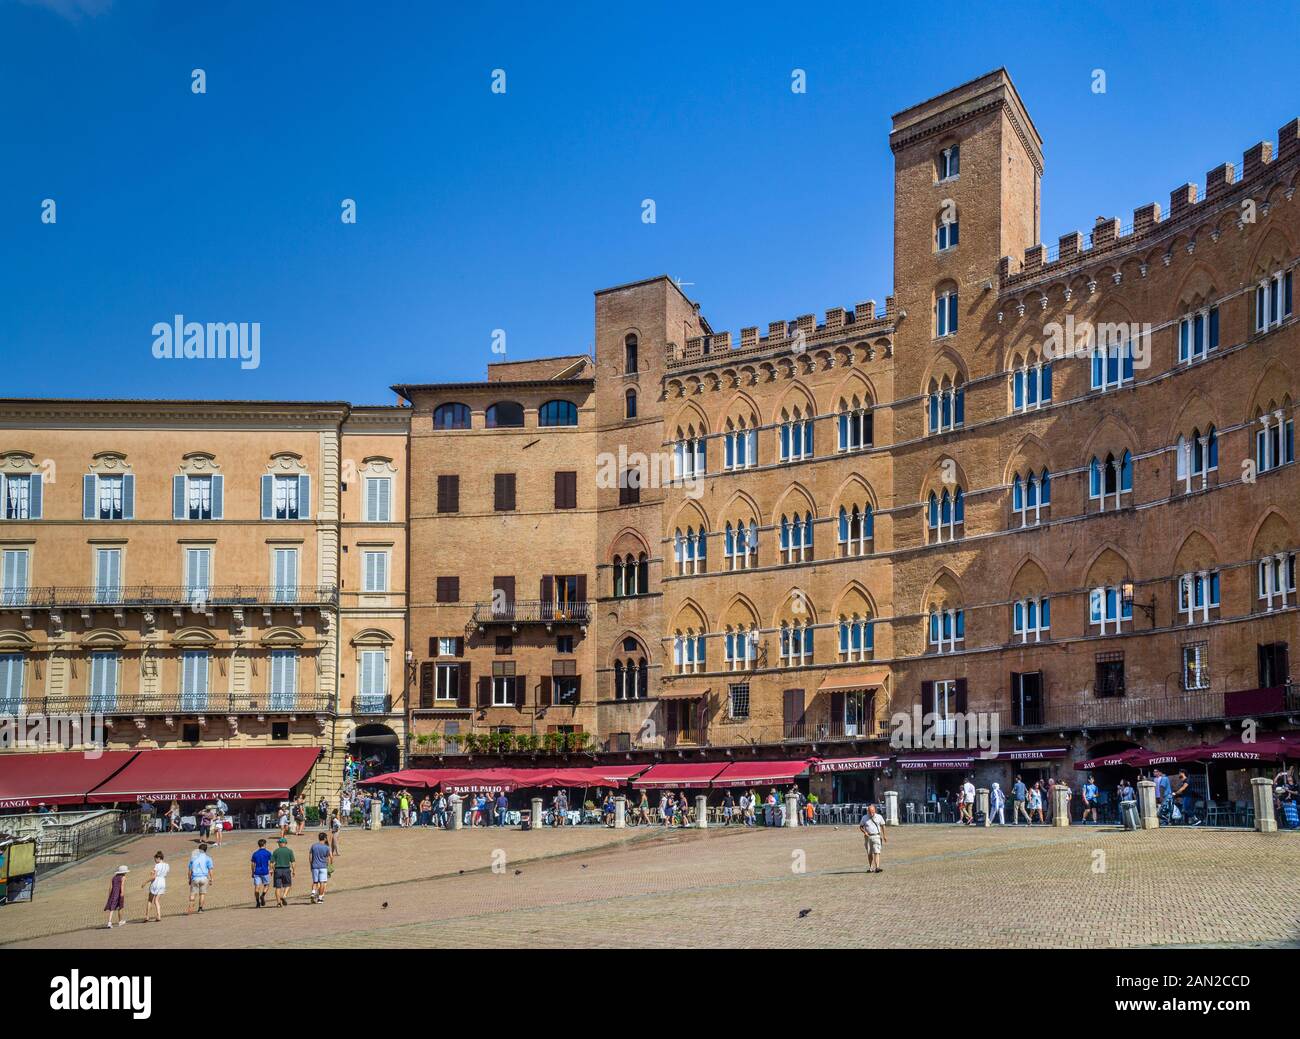 Palazzi Signorili (Herrenhäuser) umklingt den riesigen öffentlichen Raum der mittelalterlichen Piazza del Campo im historischen Zentrum von Siena, Toskana, Italien Stockfoto